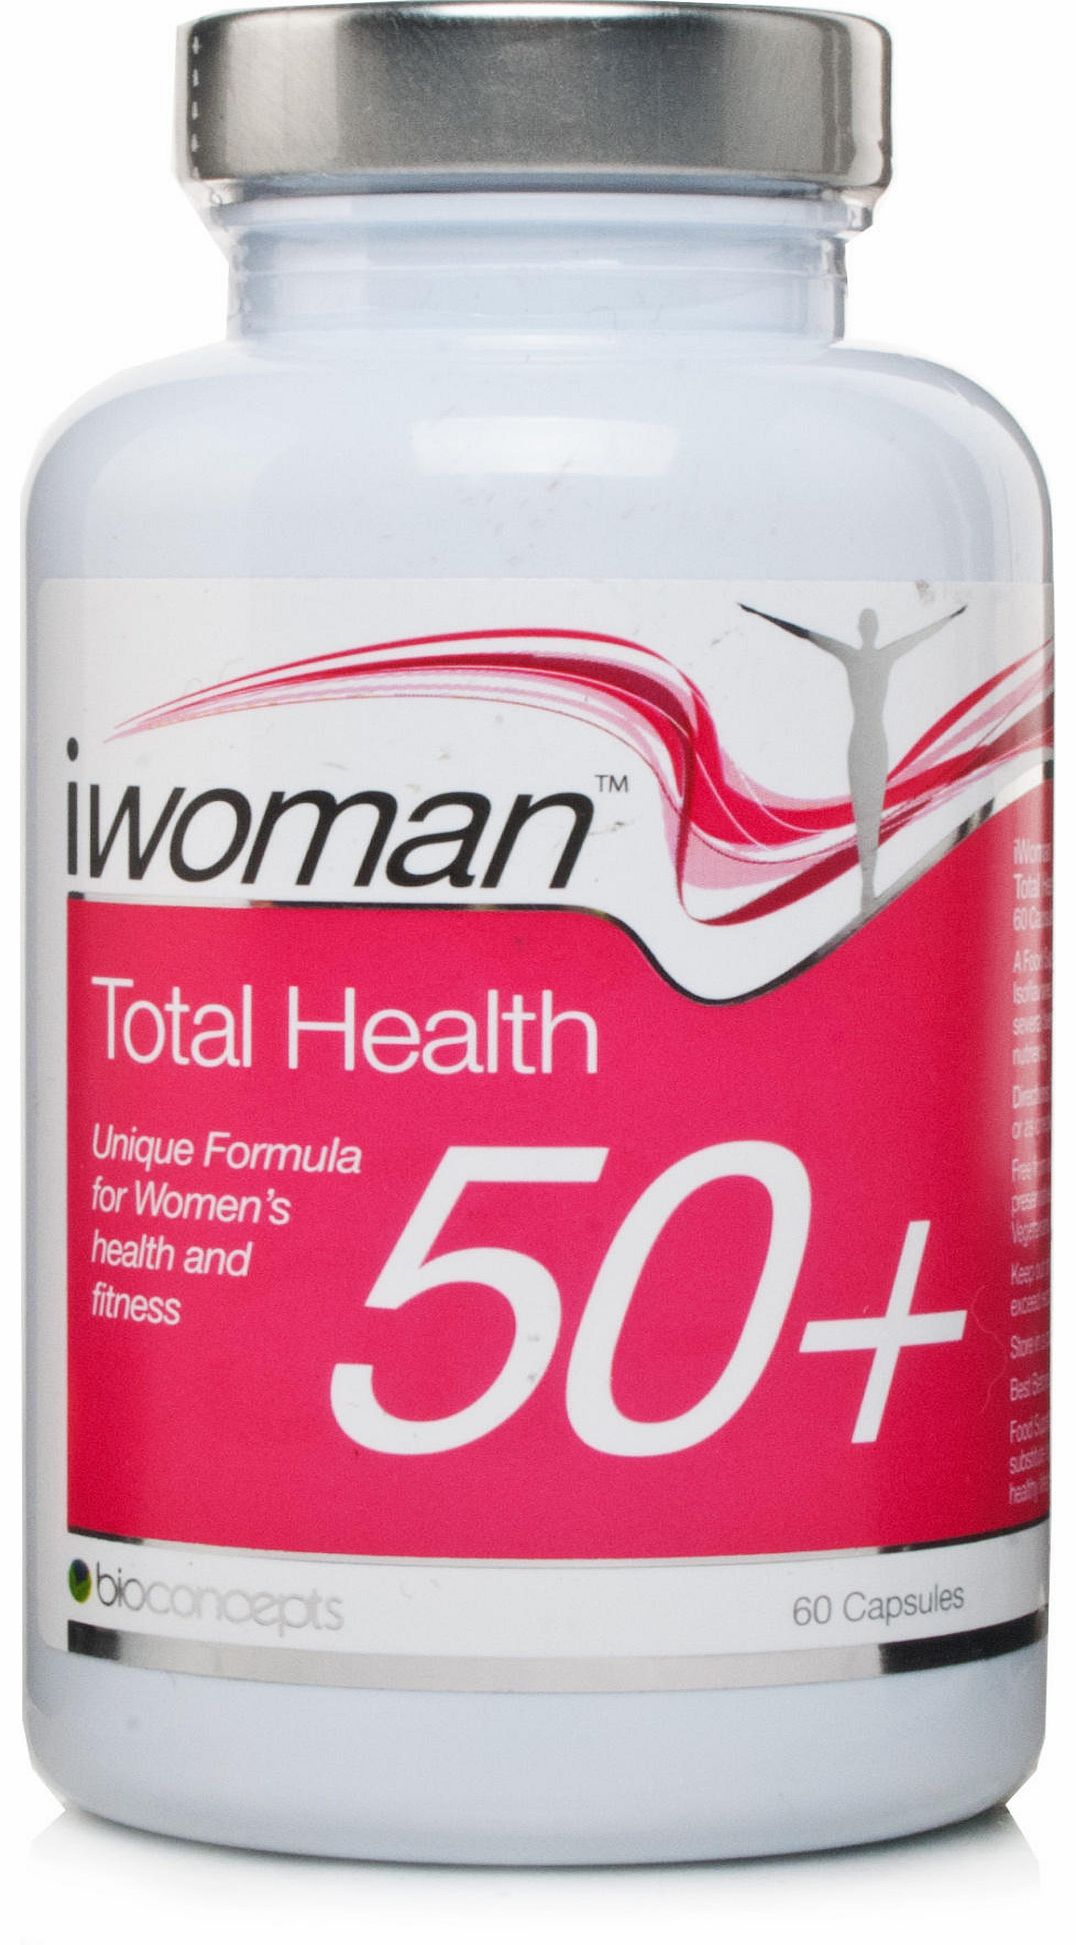 Bioconcepts iwoman Total Health 50 